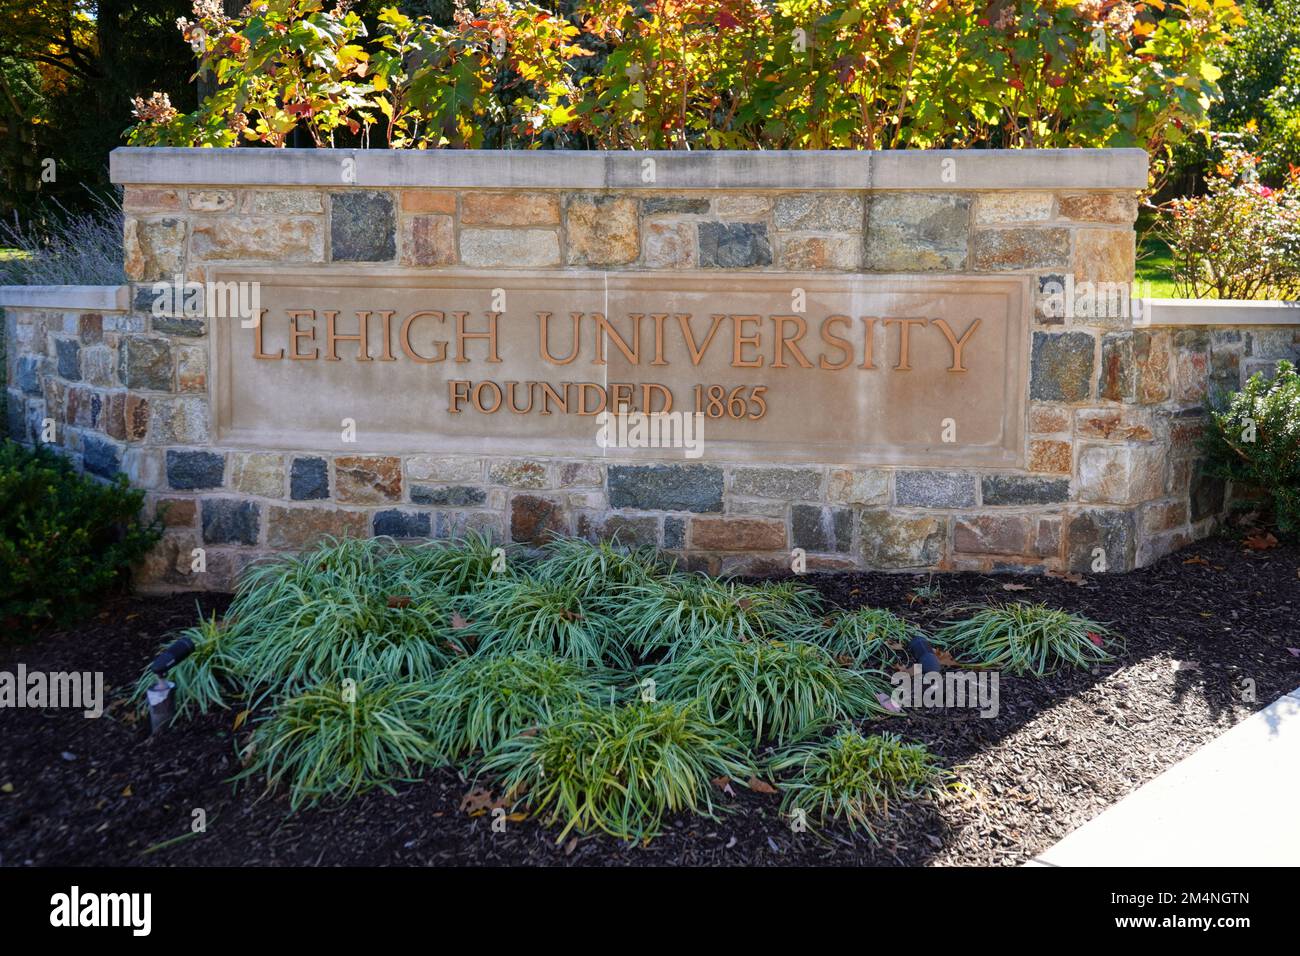 Sign for Lehigh University in Bethlehem, Pennsylvania Stock Photo